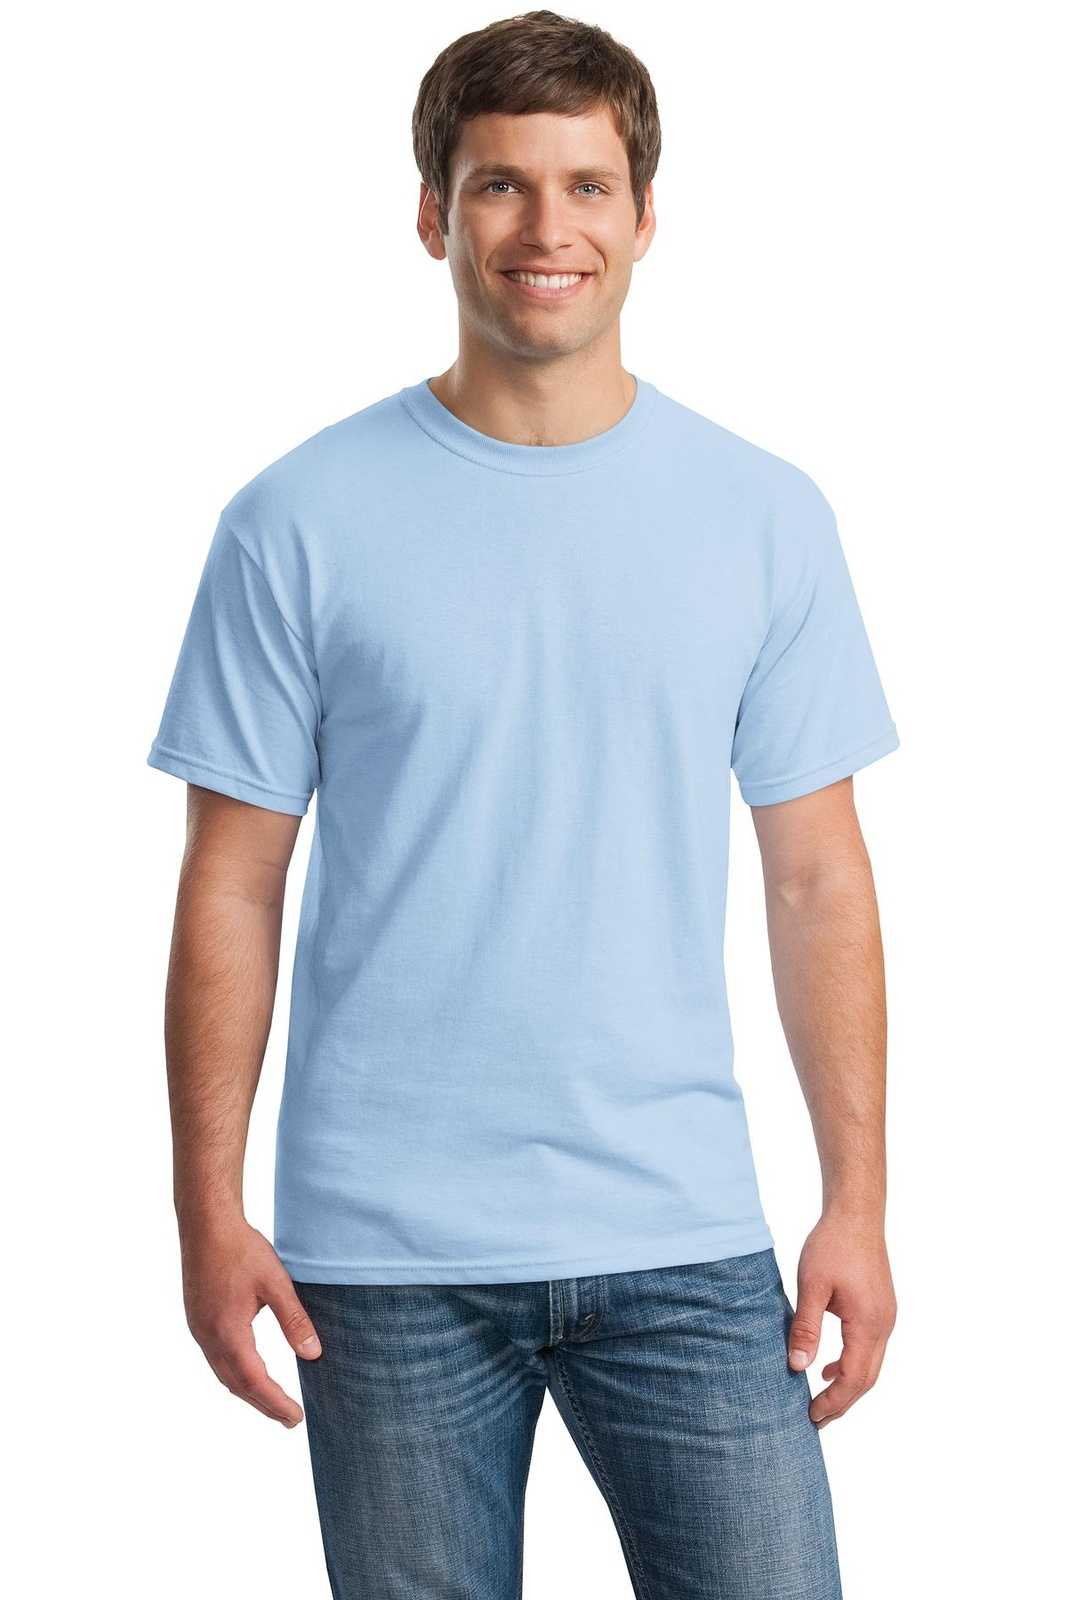 Gildan 5000 Heavy Cotton 100% Cotton T-Shirt - Light Blue - HIT a Double